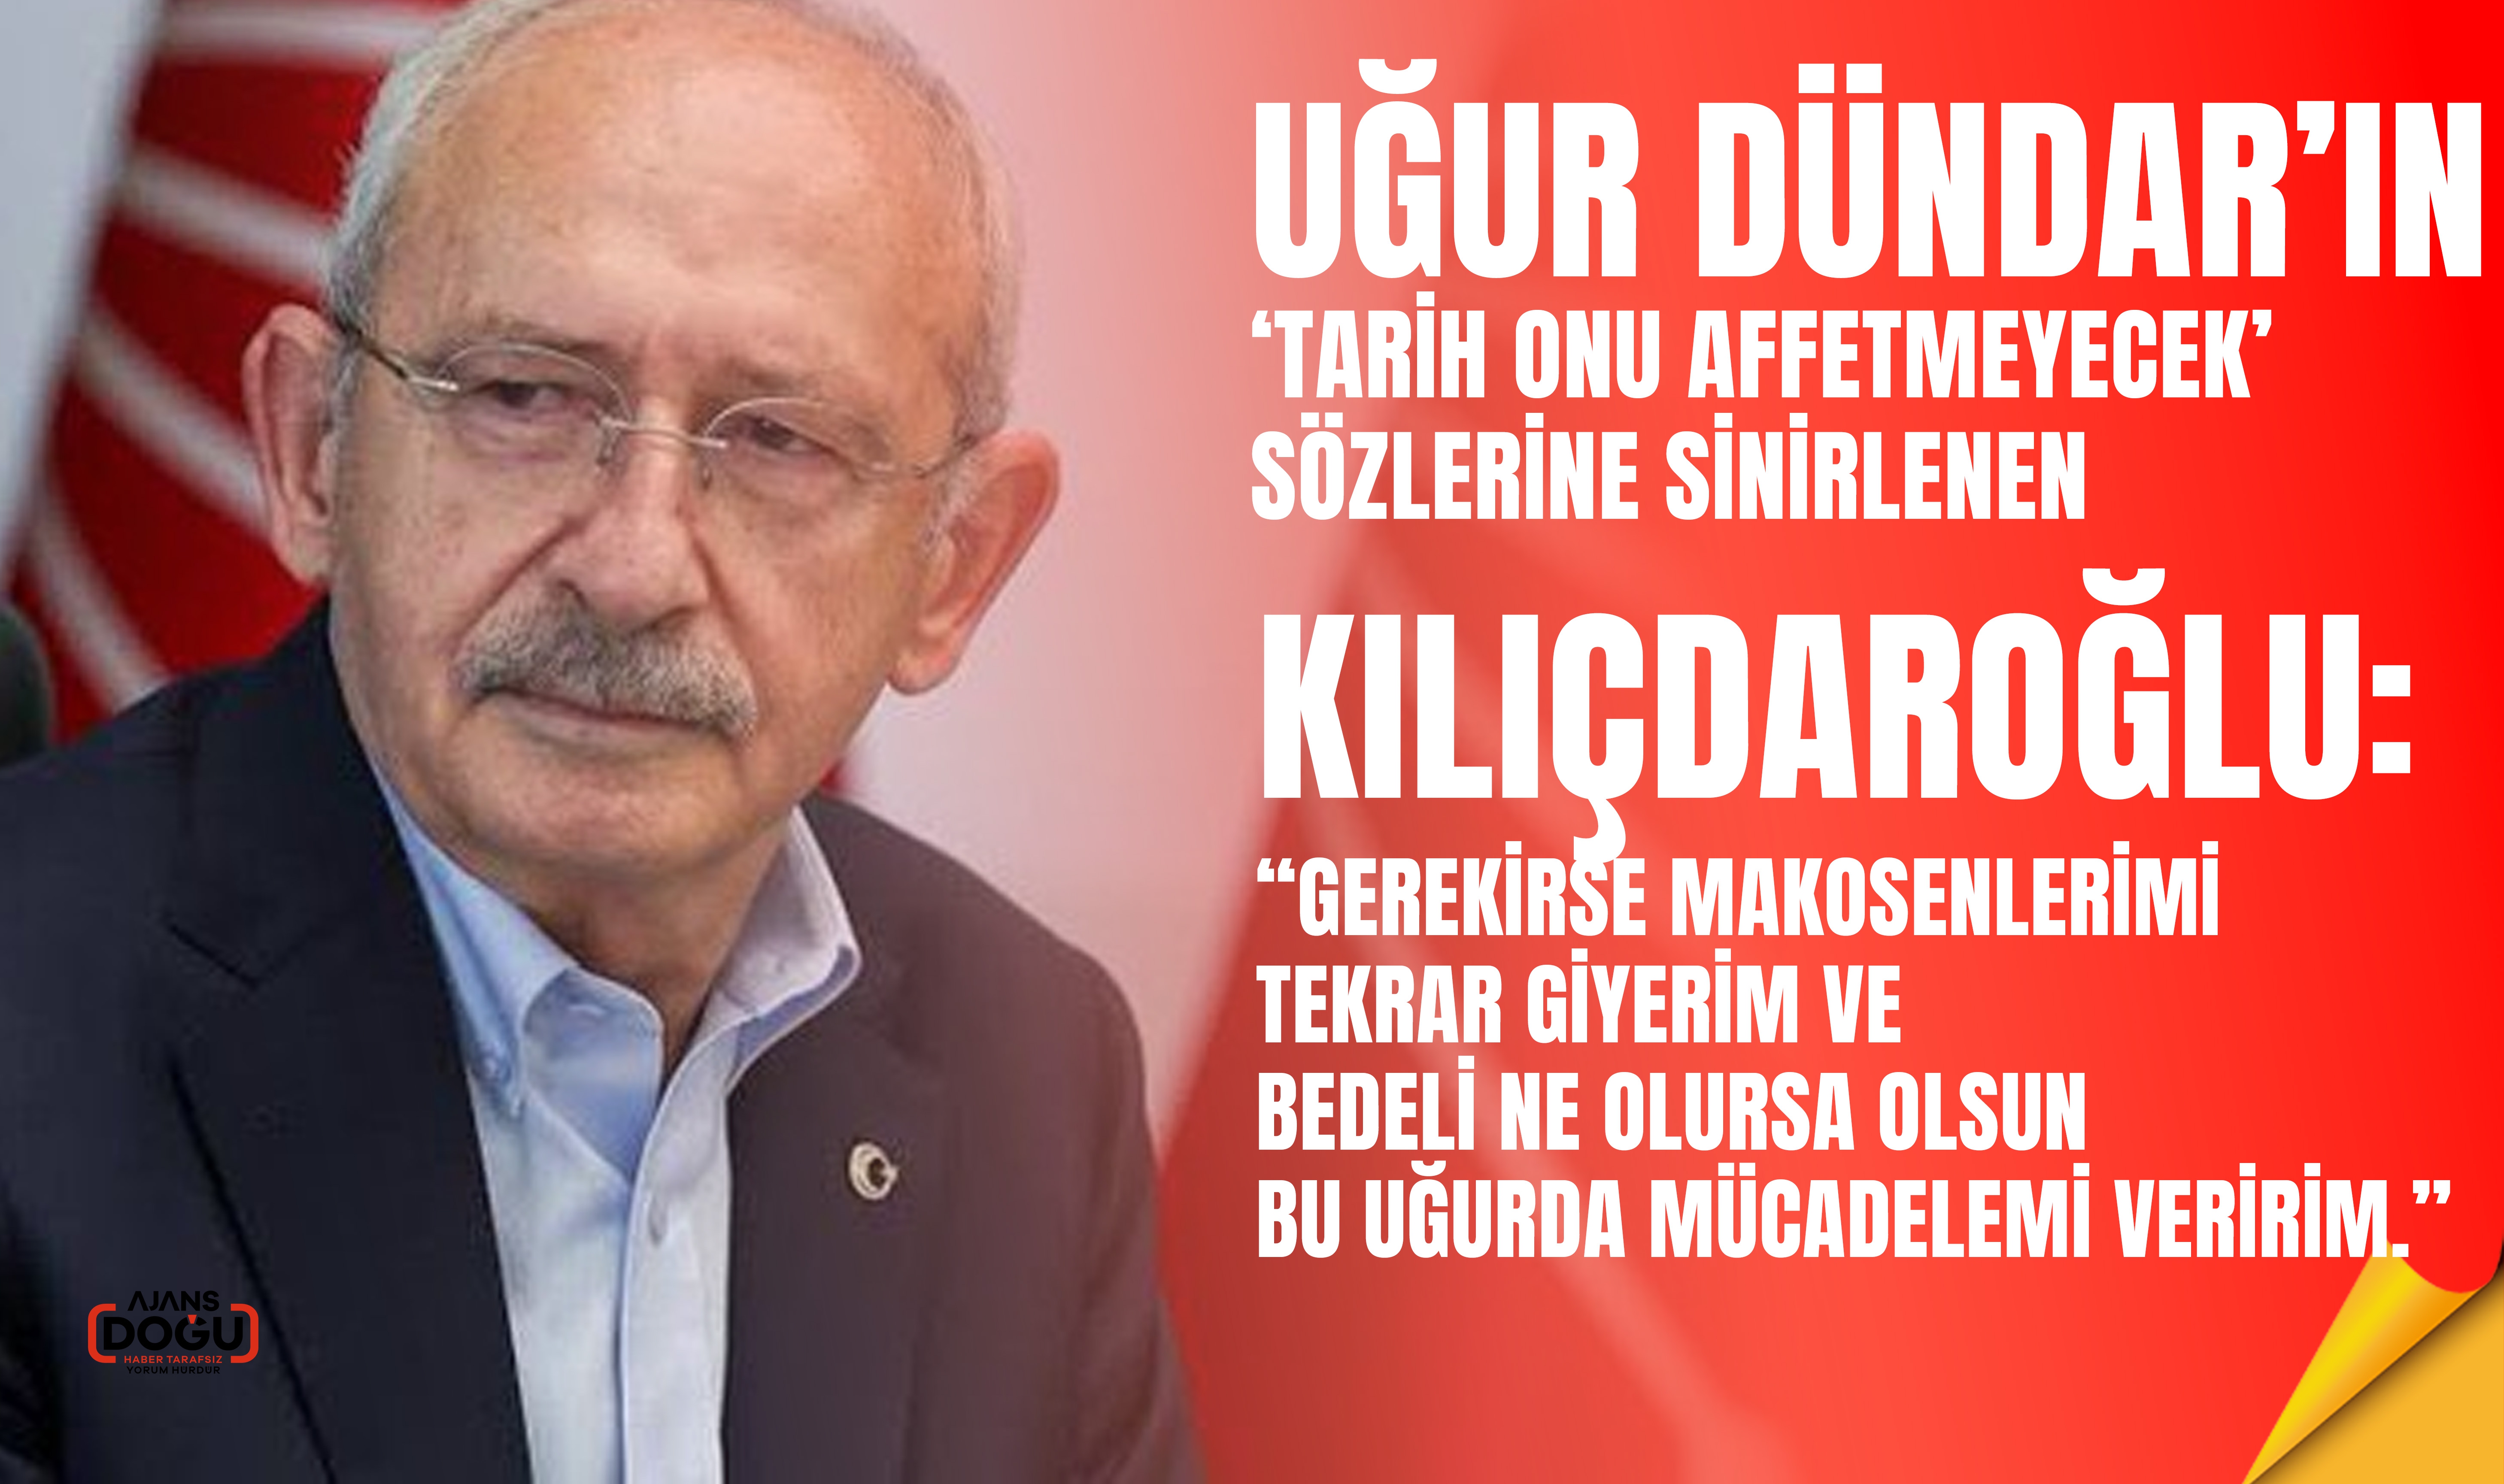 Kemal Kılıçdaroğlu, Uğur Dündar'a Çok Sert Çıkıştı: Makosenlerimi Tekrar Giyerim, Hesap Sorarım